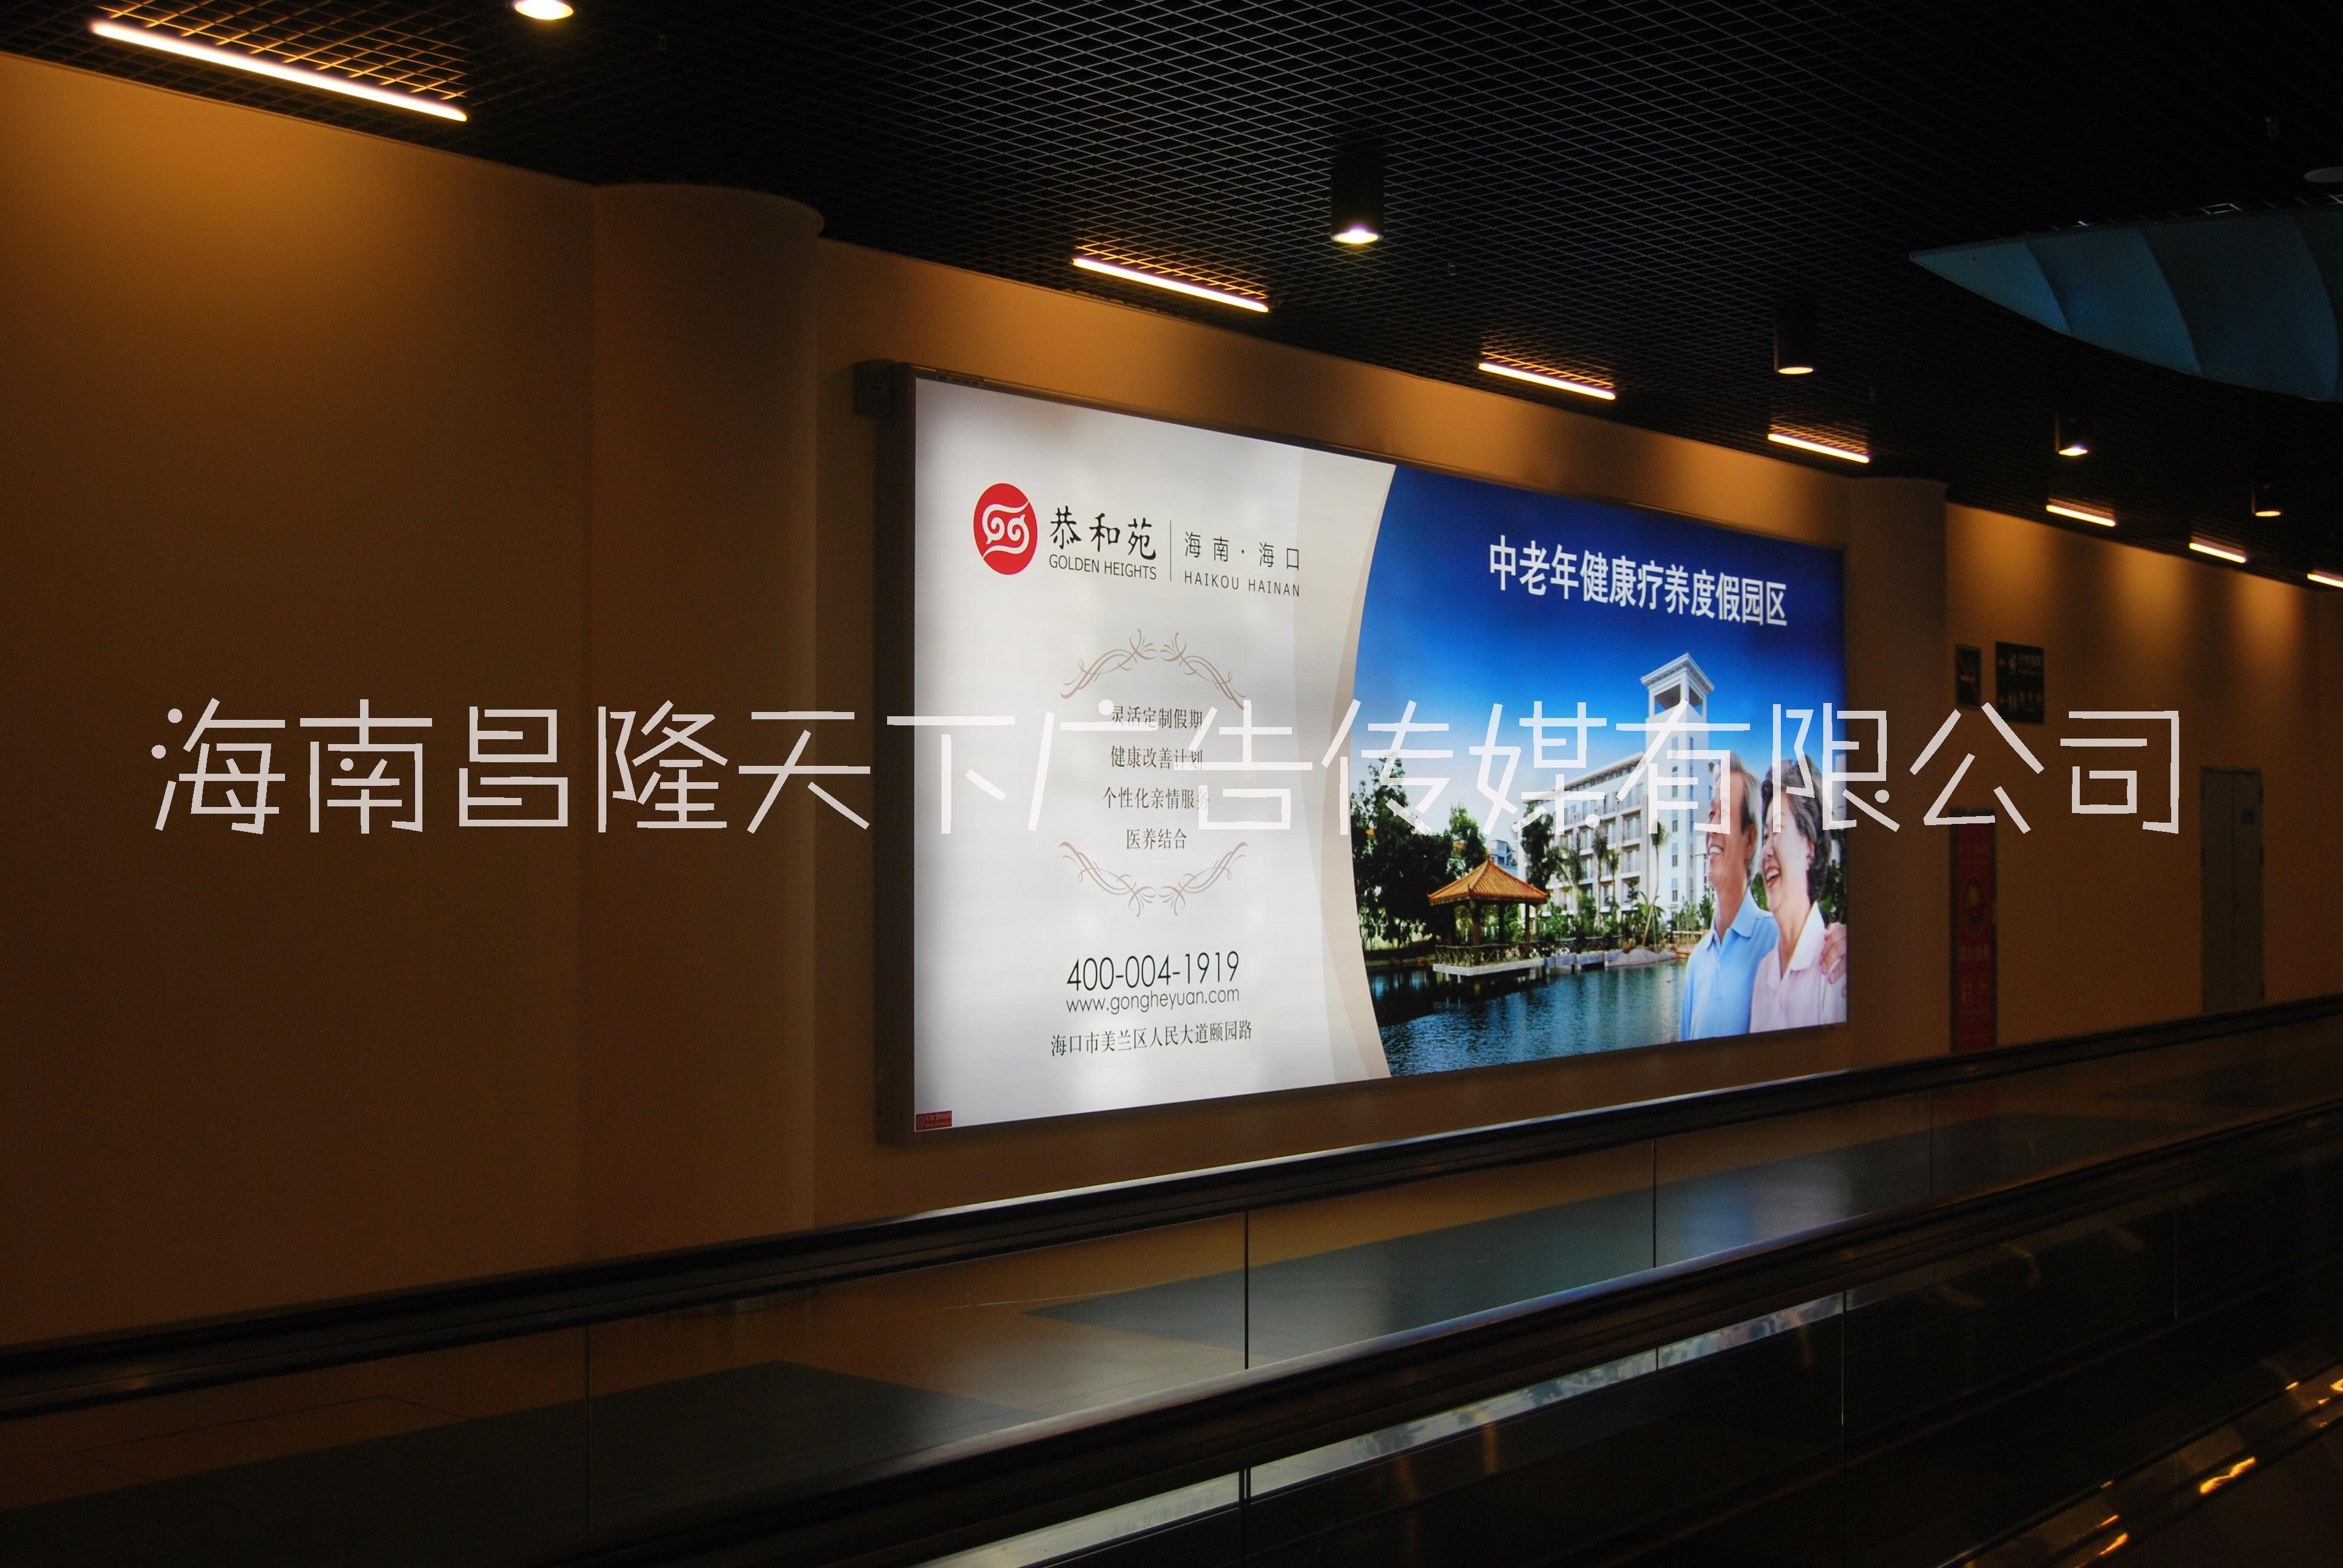 海南几大机场灯箱广告牌媒体 海南海口三亚博鳌机场灯箱和LED图片